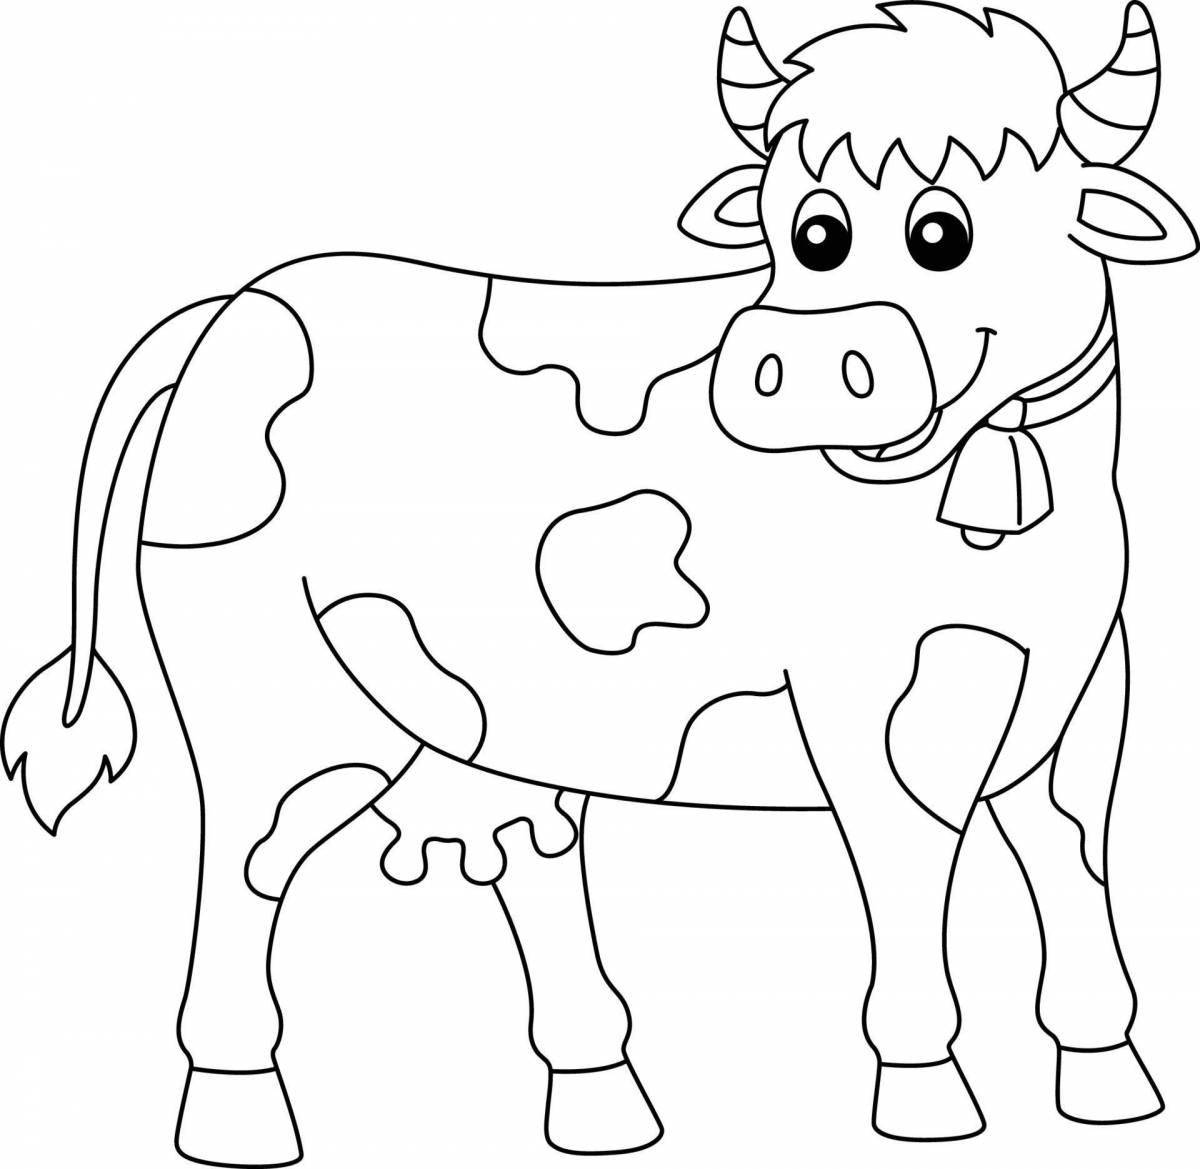 Восхитительная цветная раскраска коровы и теленка